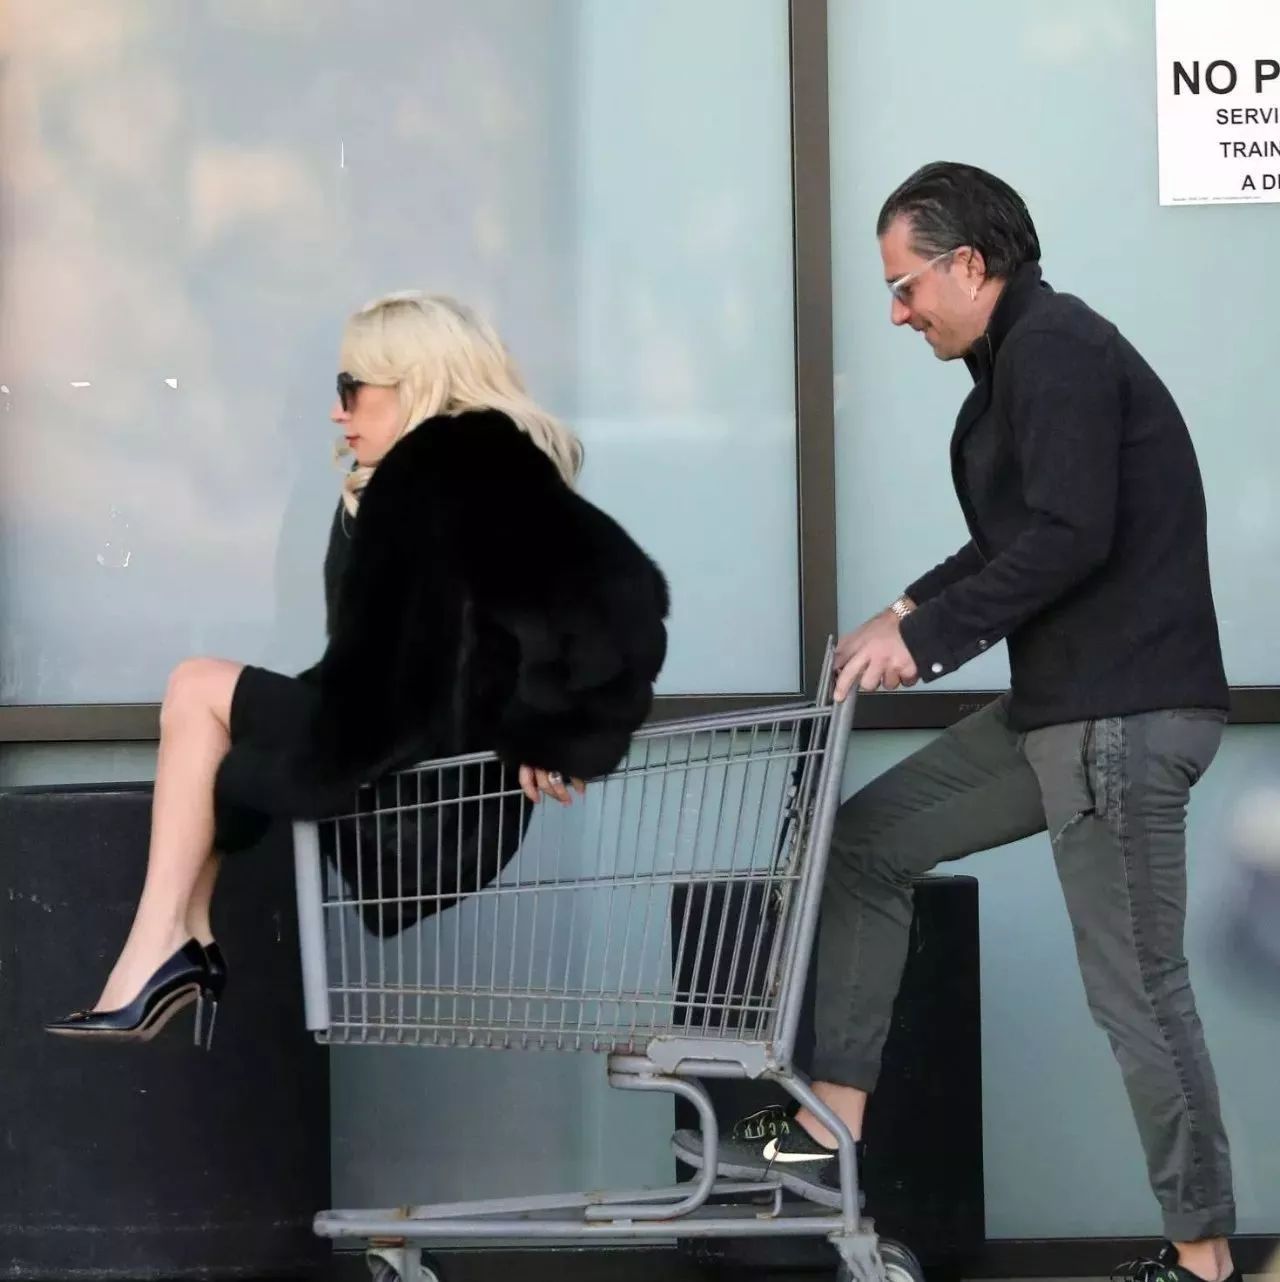 超市开始卖鳖了?Lady Gaga即使逛超市也不走寻常路!